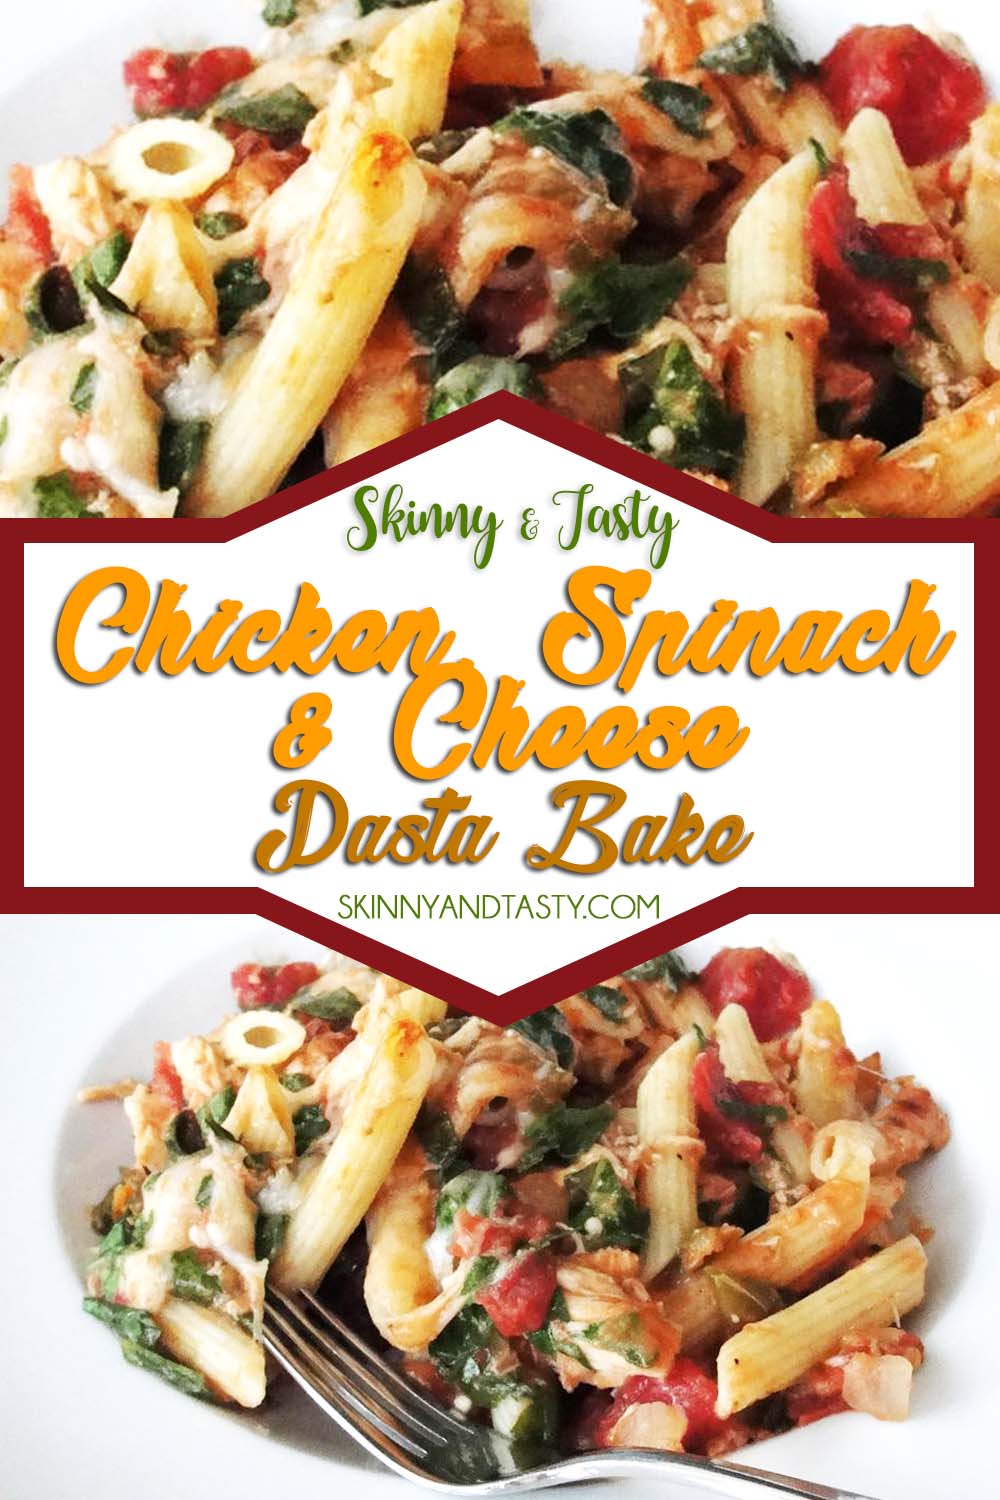 Chicken, Spinach, & Cheese Pasta Bake Recipe